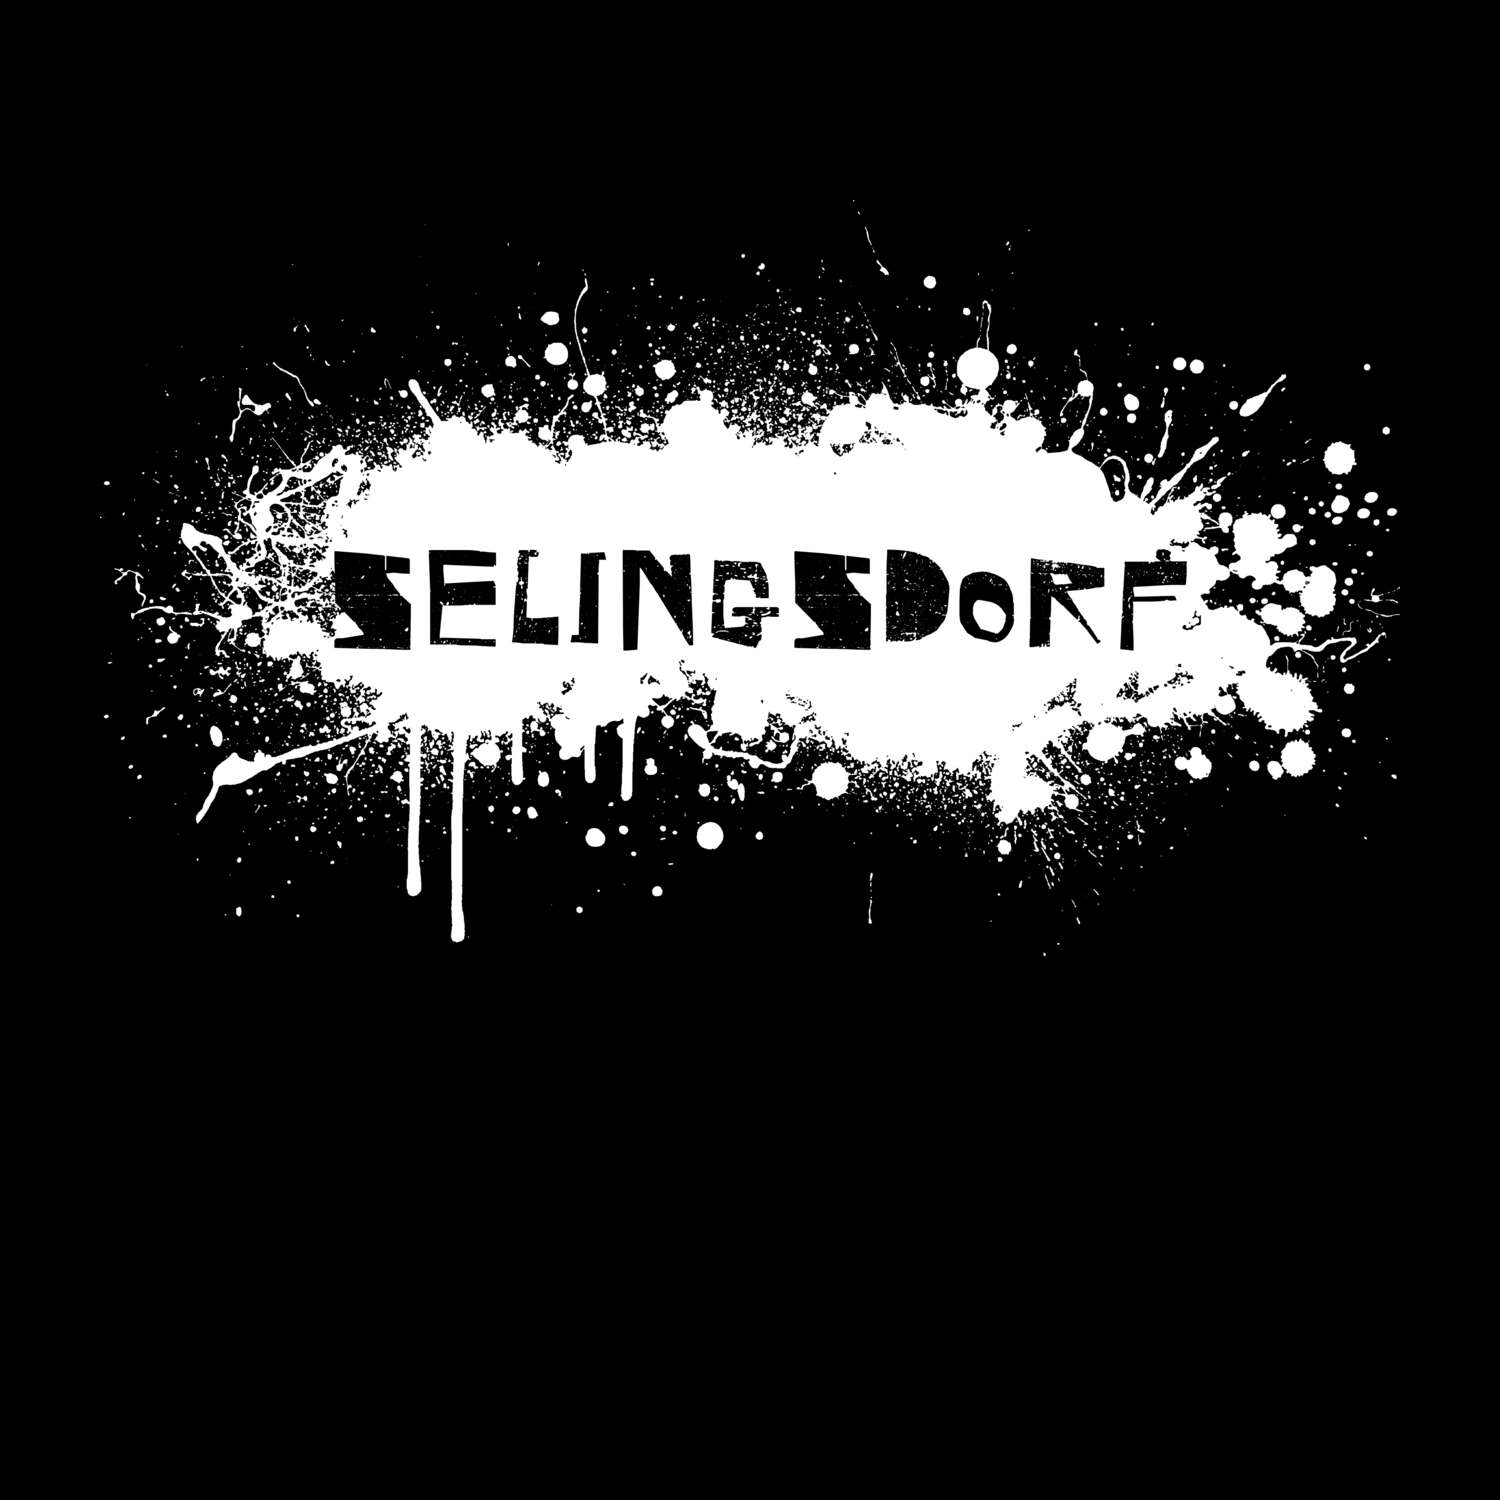 Selingsdorf T-Shirt »Paint Splash Punk«